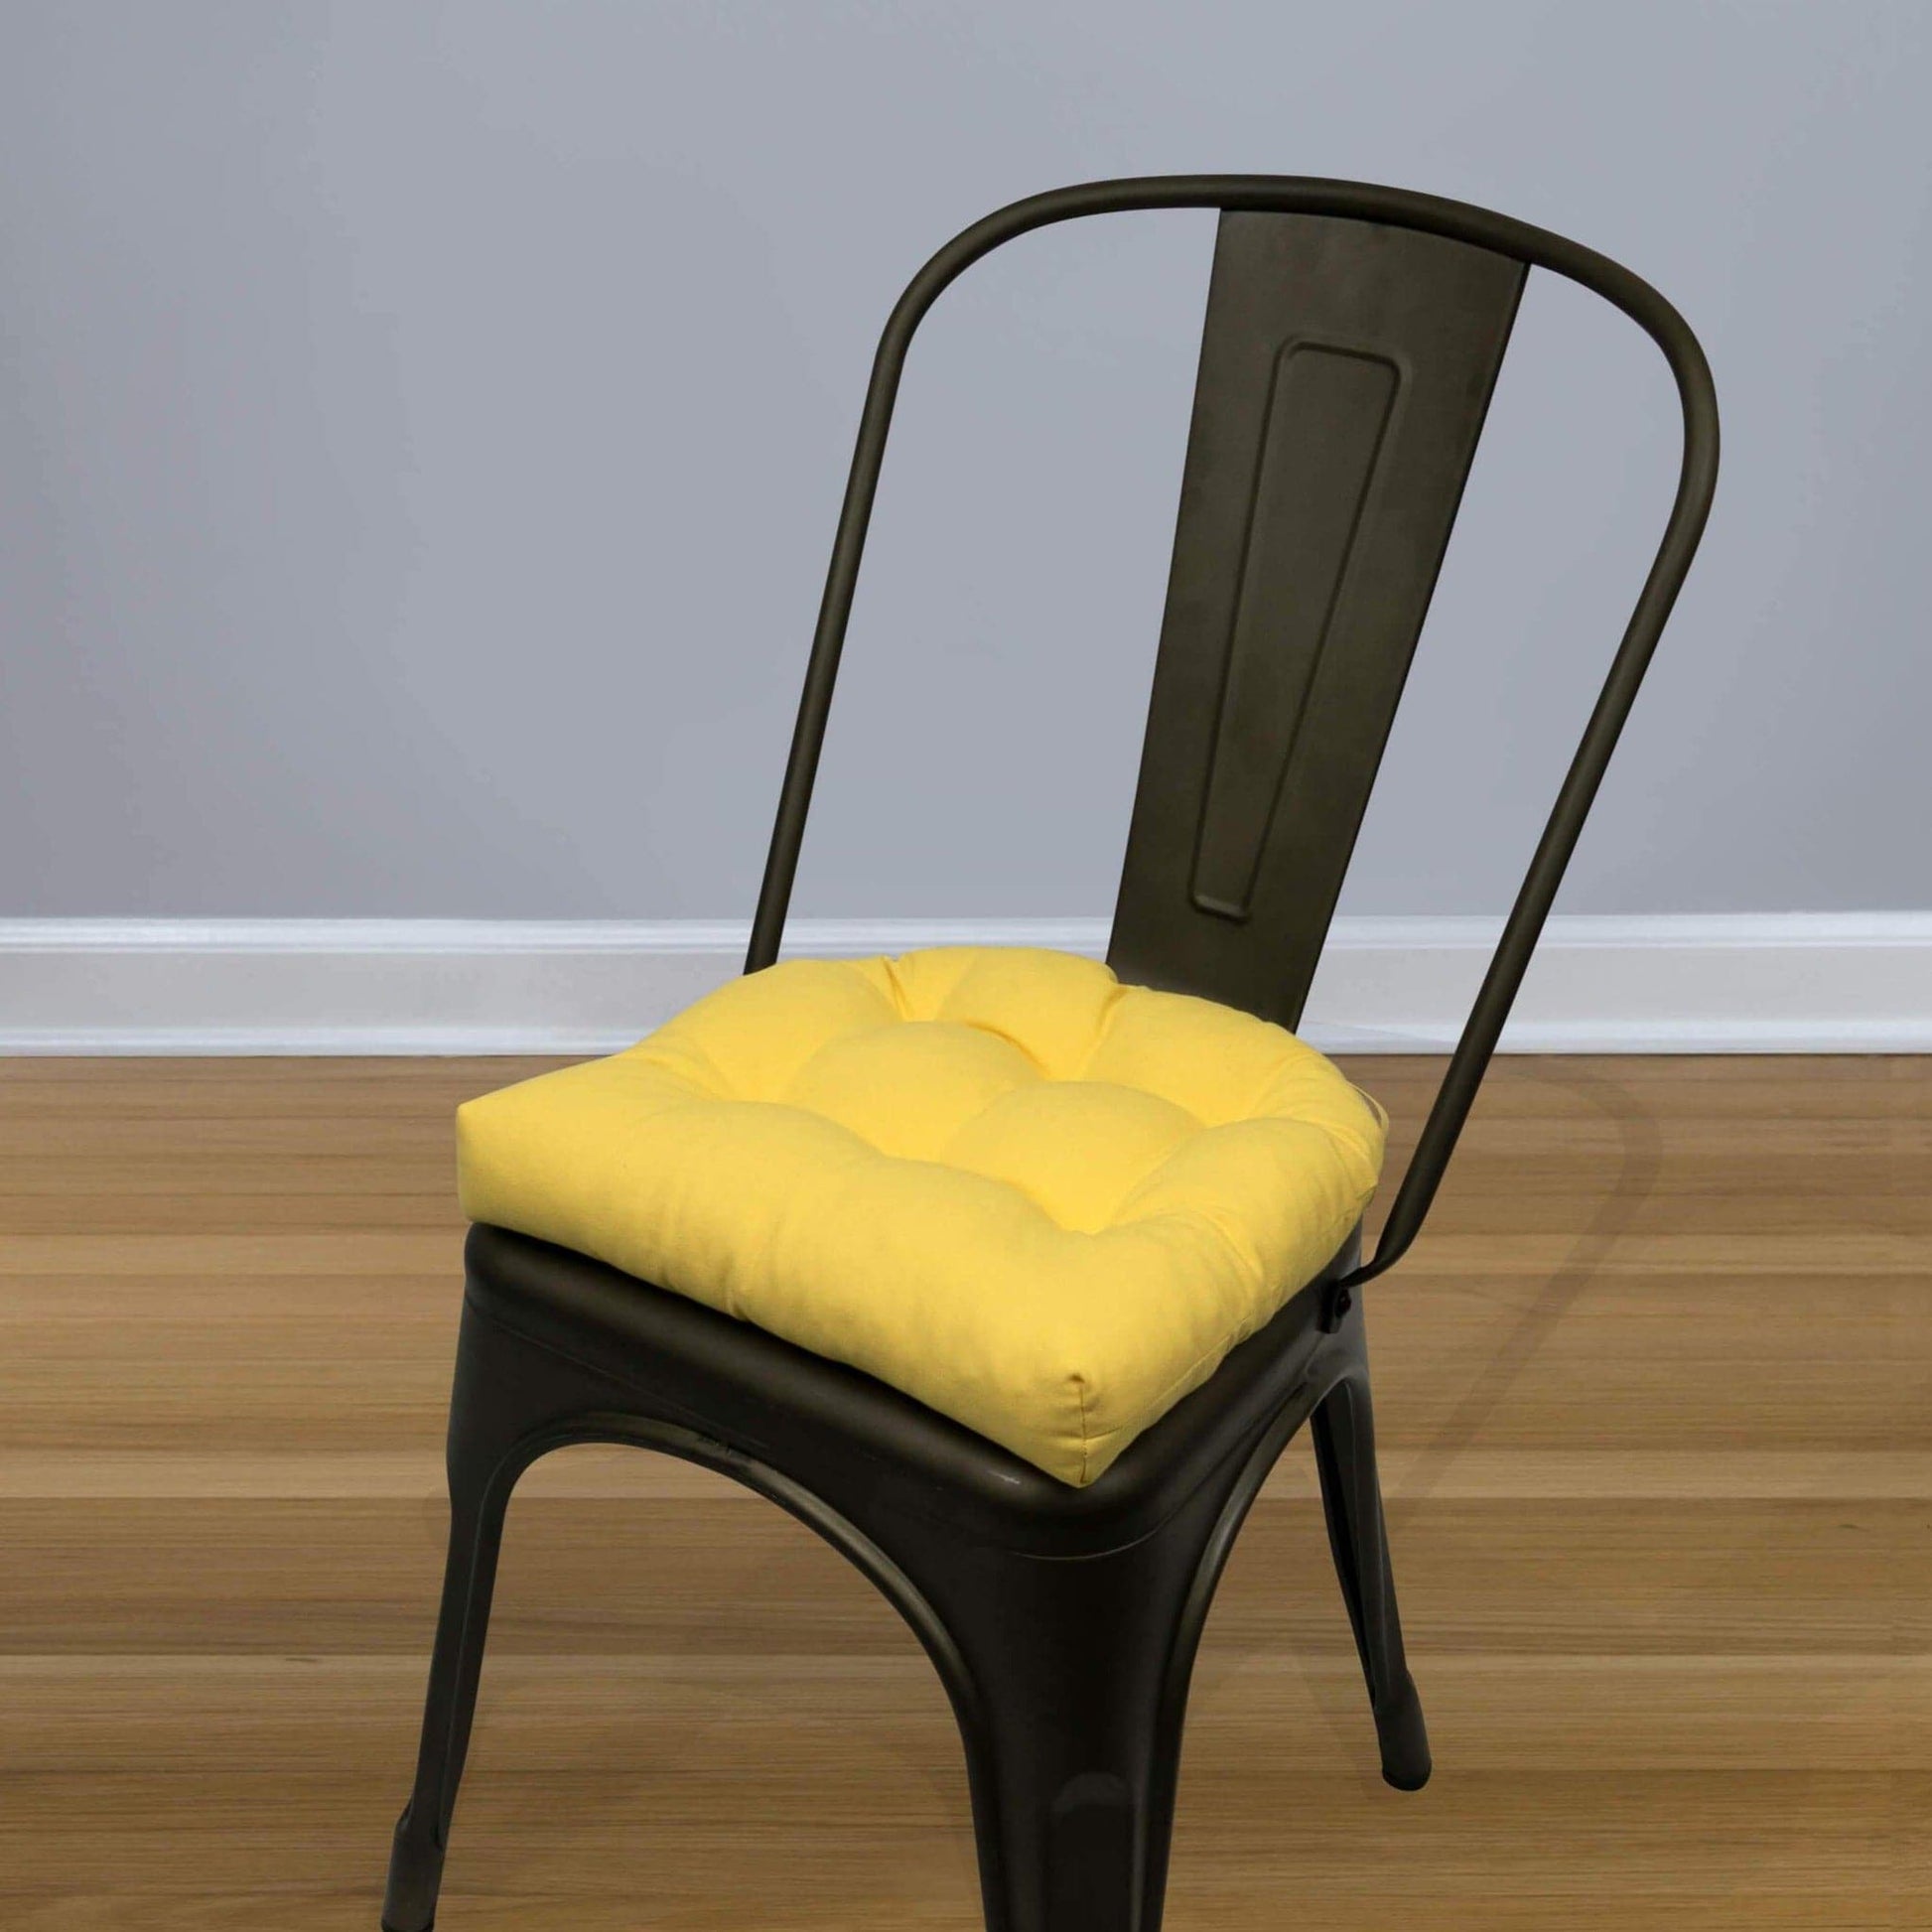 Cotton Duck Yellow Industrial Chair Cushion - Latex Foam Fill - Barnett Home Decor 